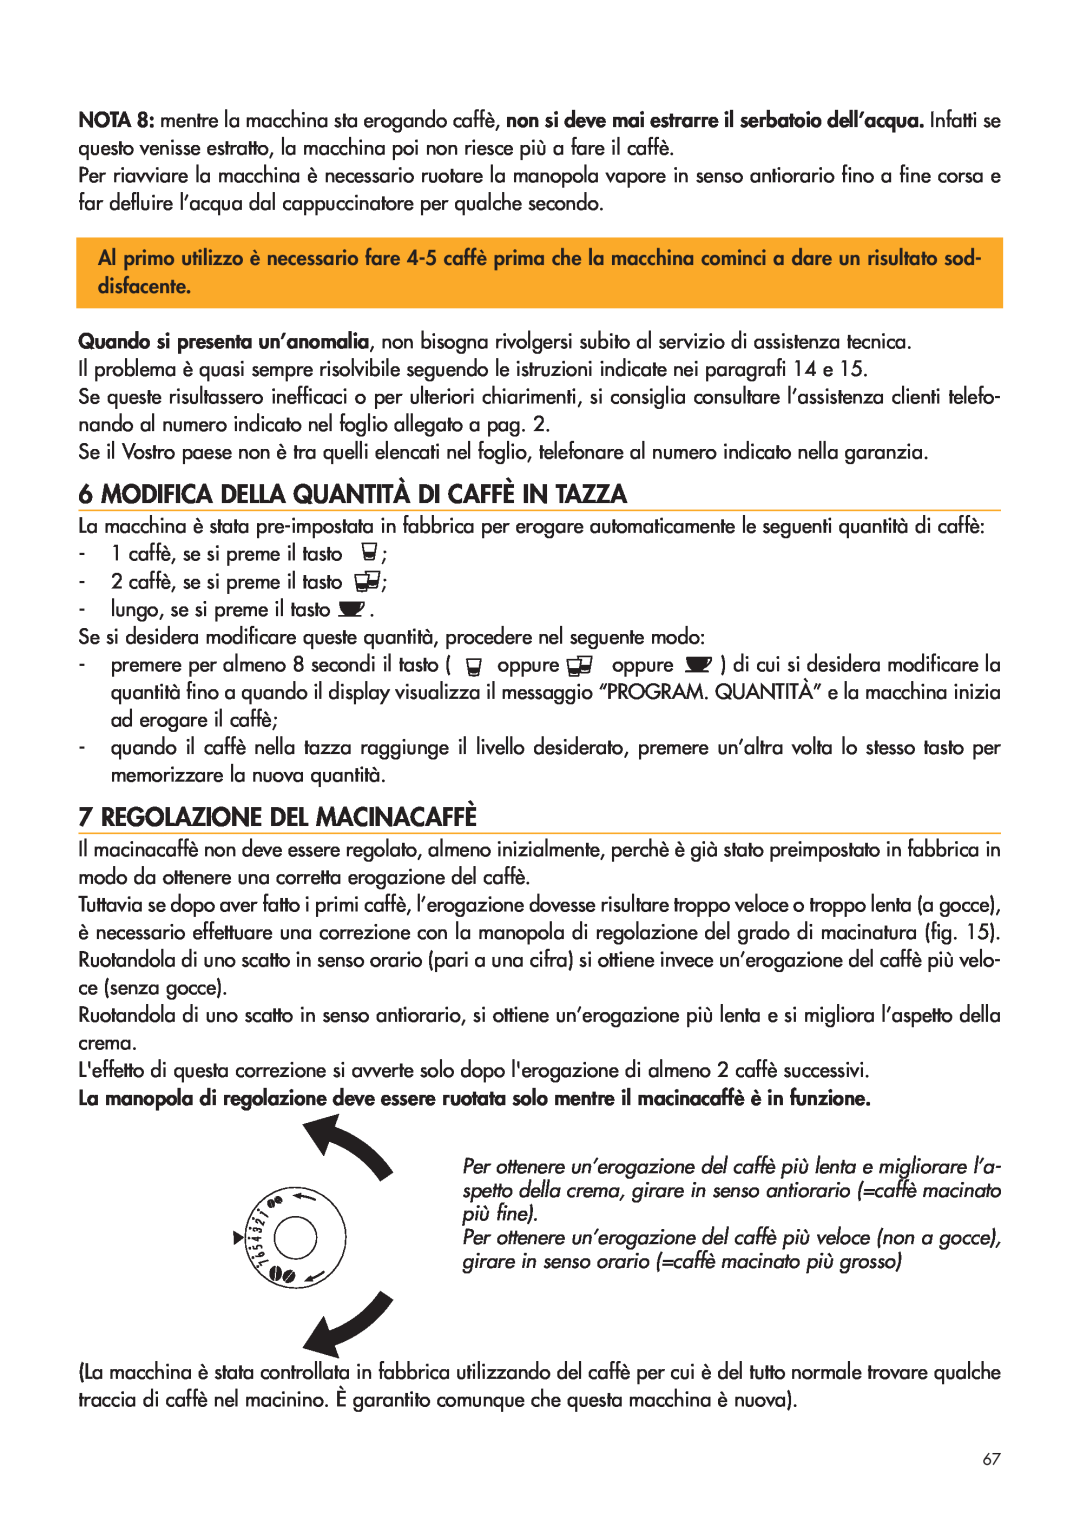 DeLonghi ESAM4400 manual Modifica Della Quantità Di Caffè In Tazza, Regolazione Del Macinacaffè 